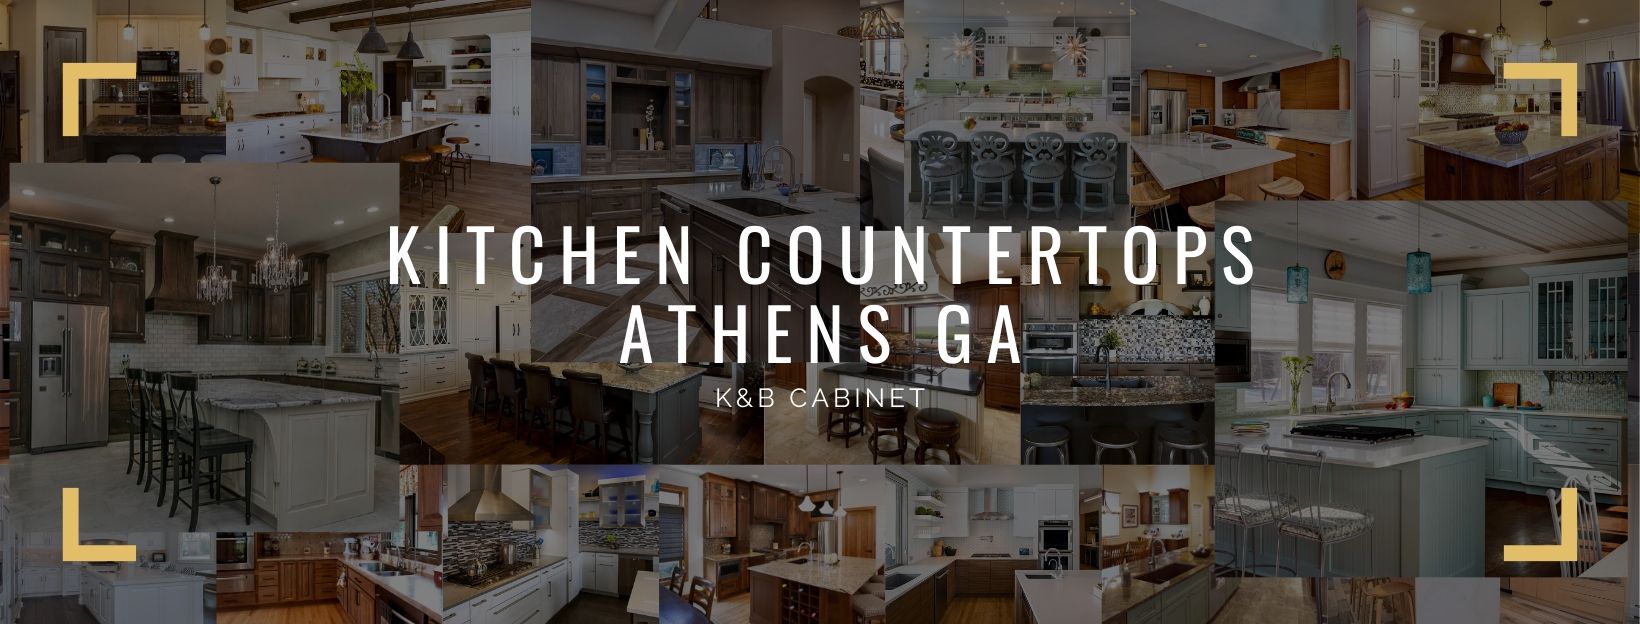 Kitchen Countertops Athens GA